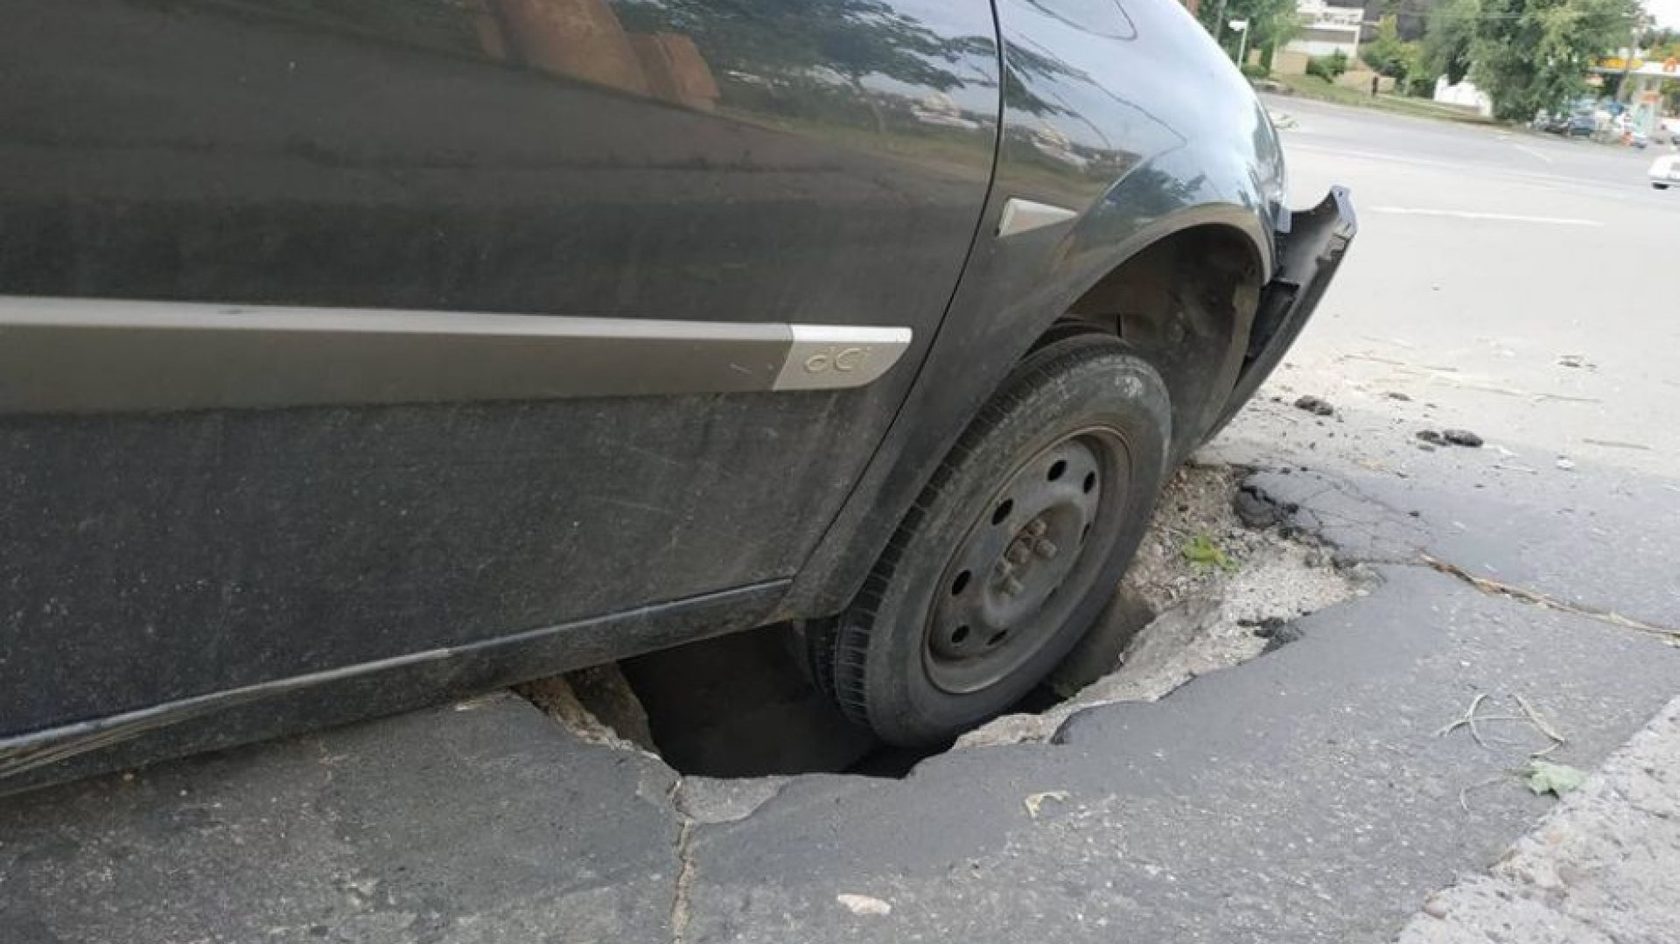 Колесо попало в яму на дороге. Колесо в яме на дороге. Повреждение автомобиля.